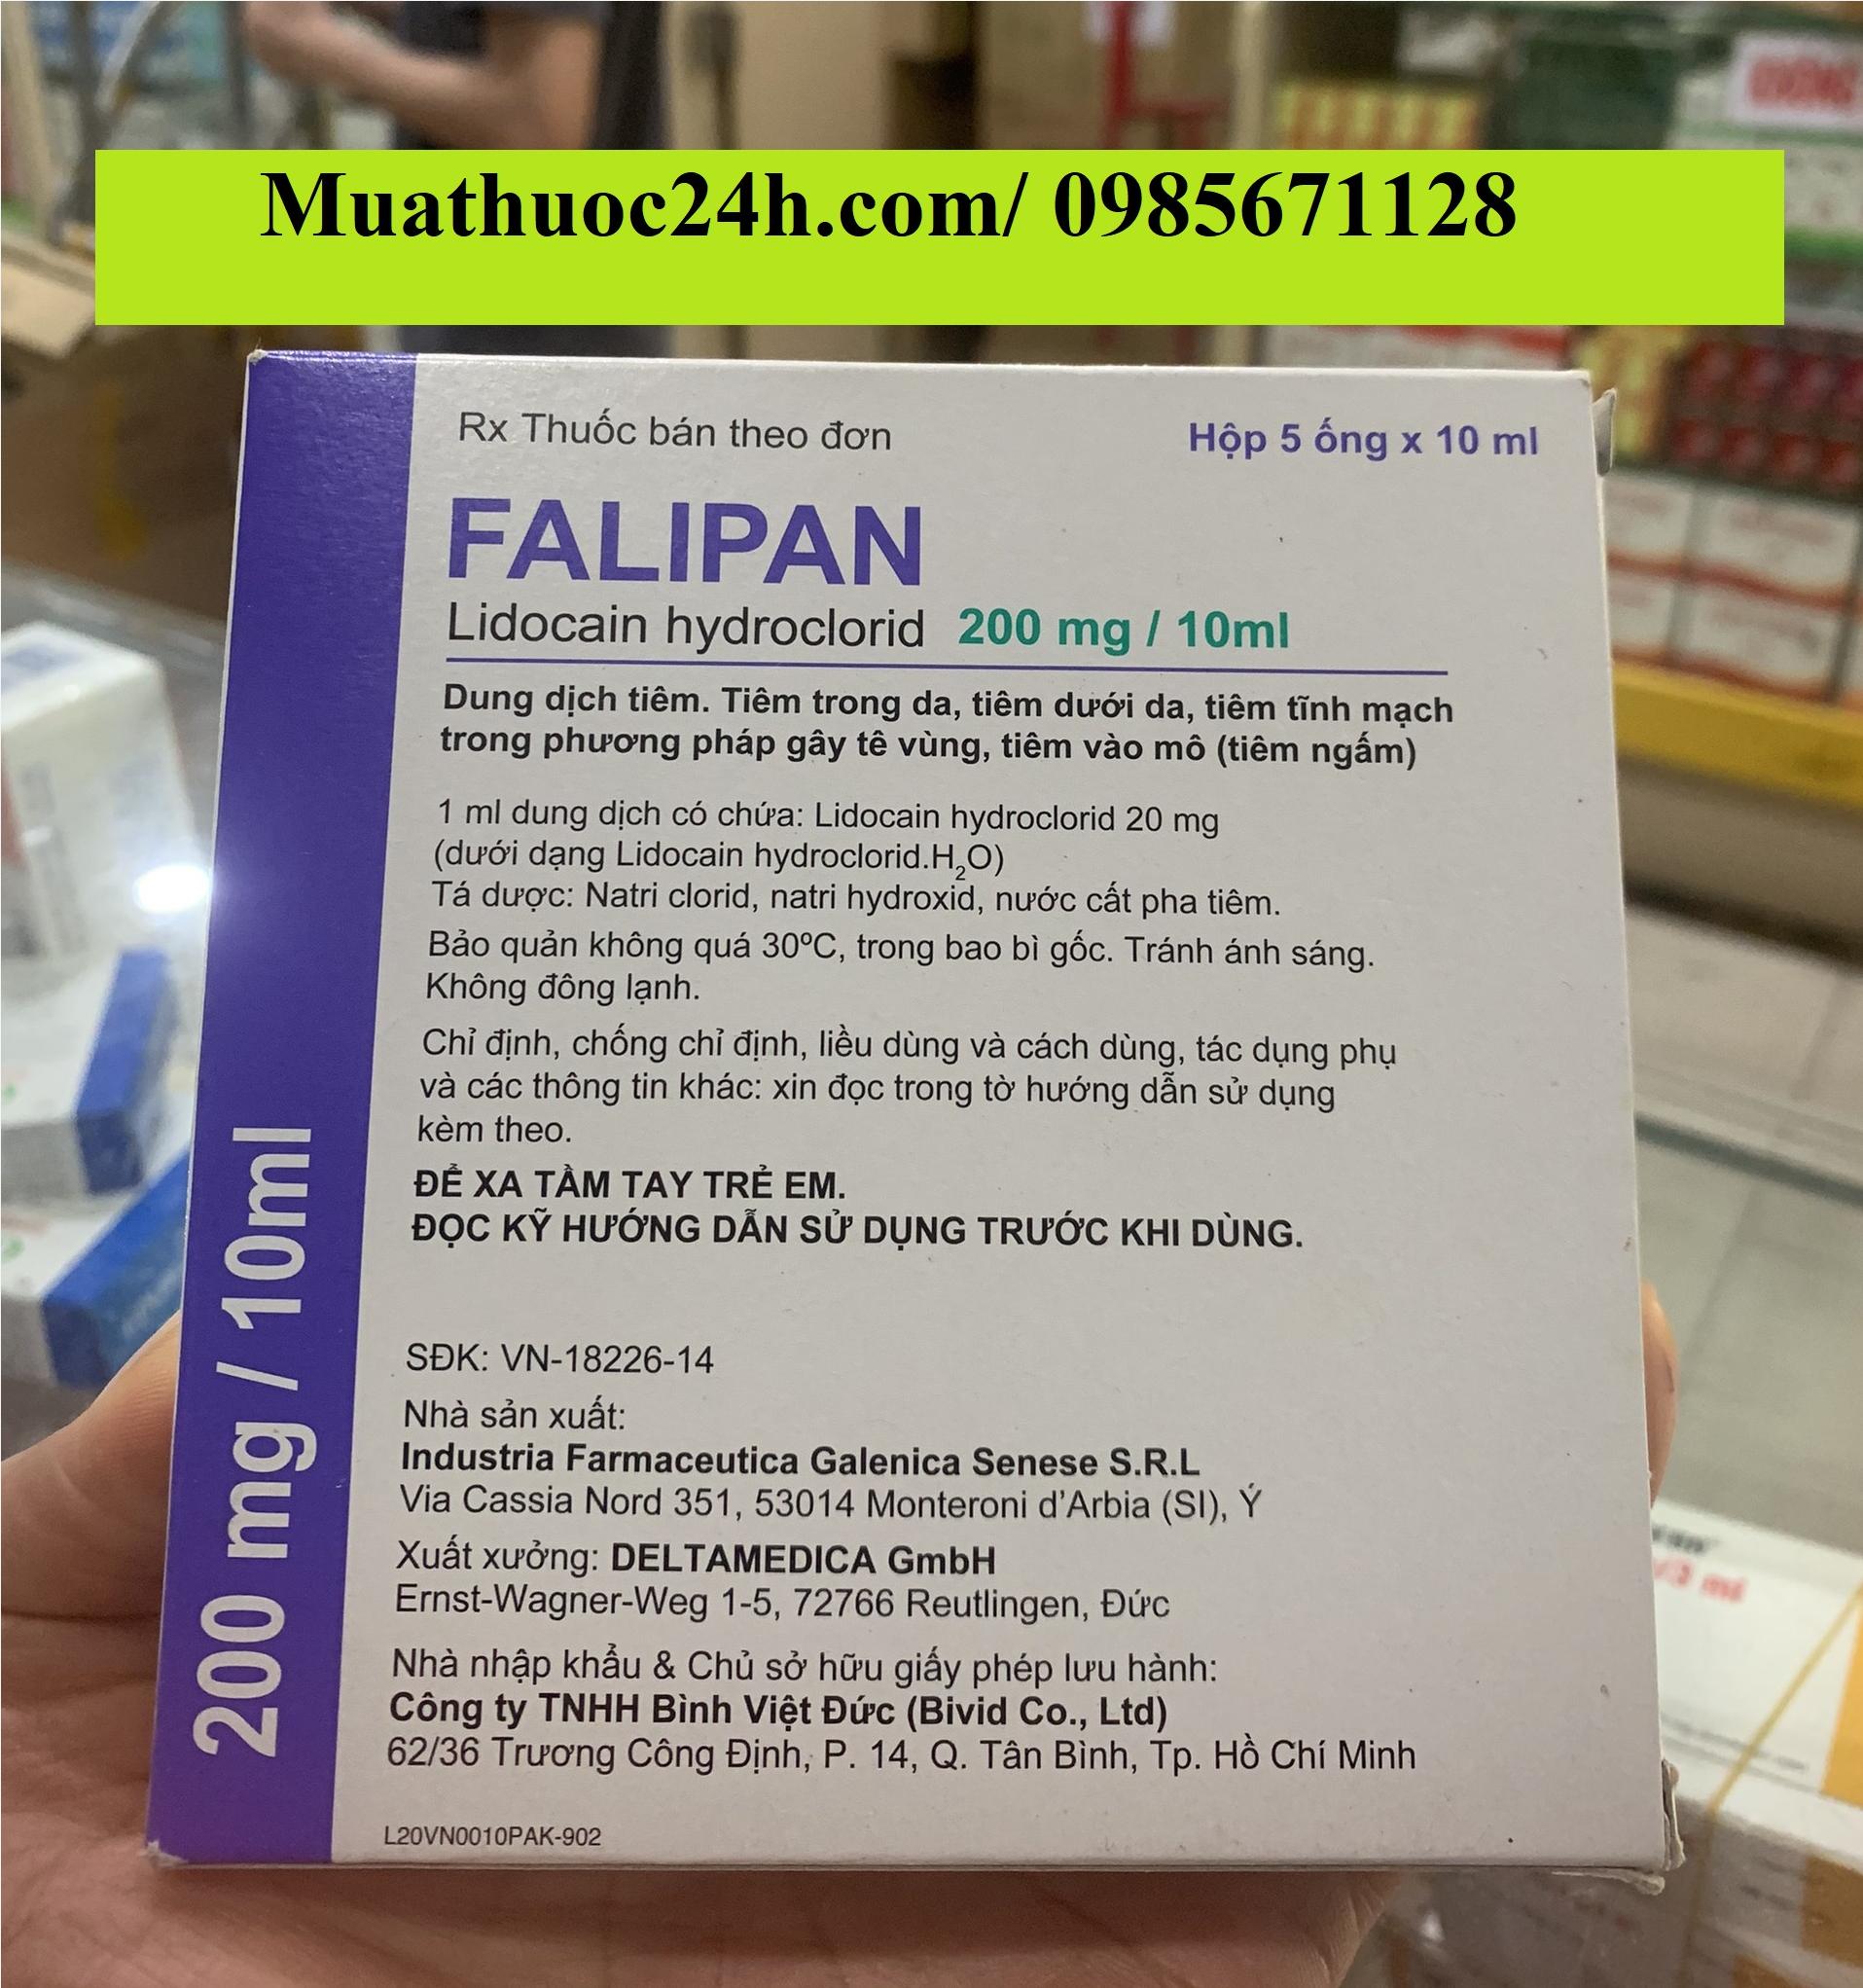 Thuốc Falipan 200mg/ 10ml Lidocain hydroclorid giá bao nhiêu mua ở đâu?